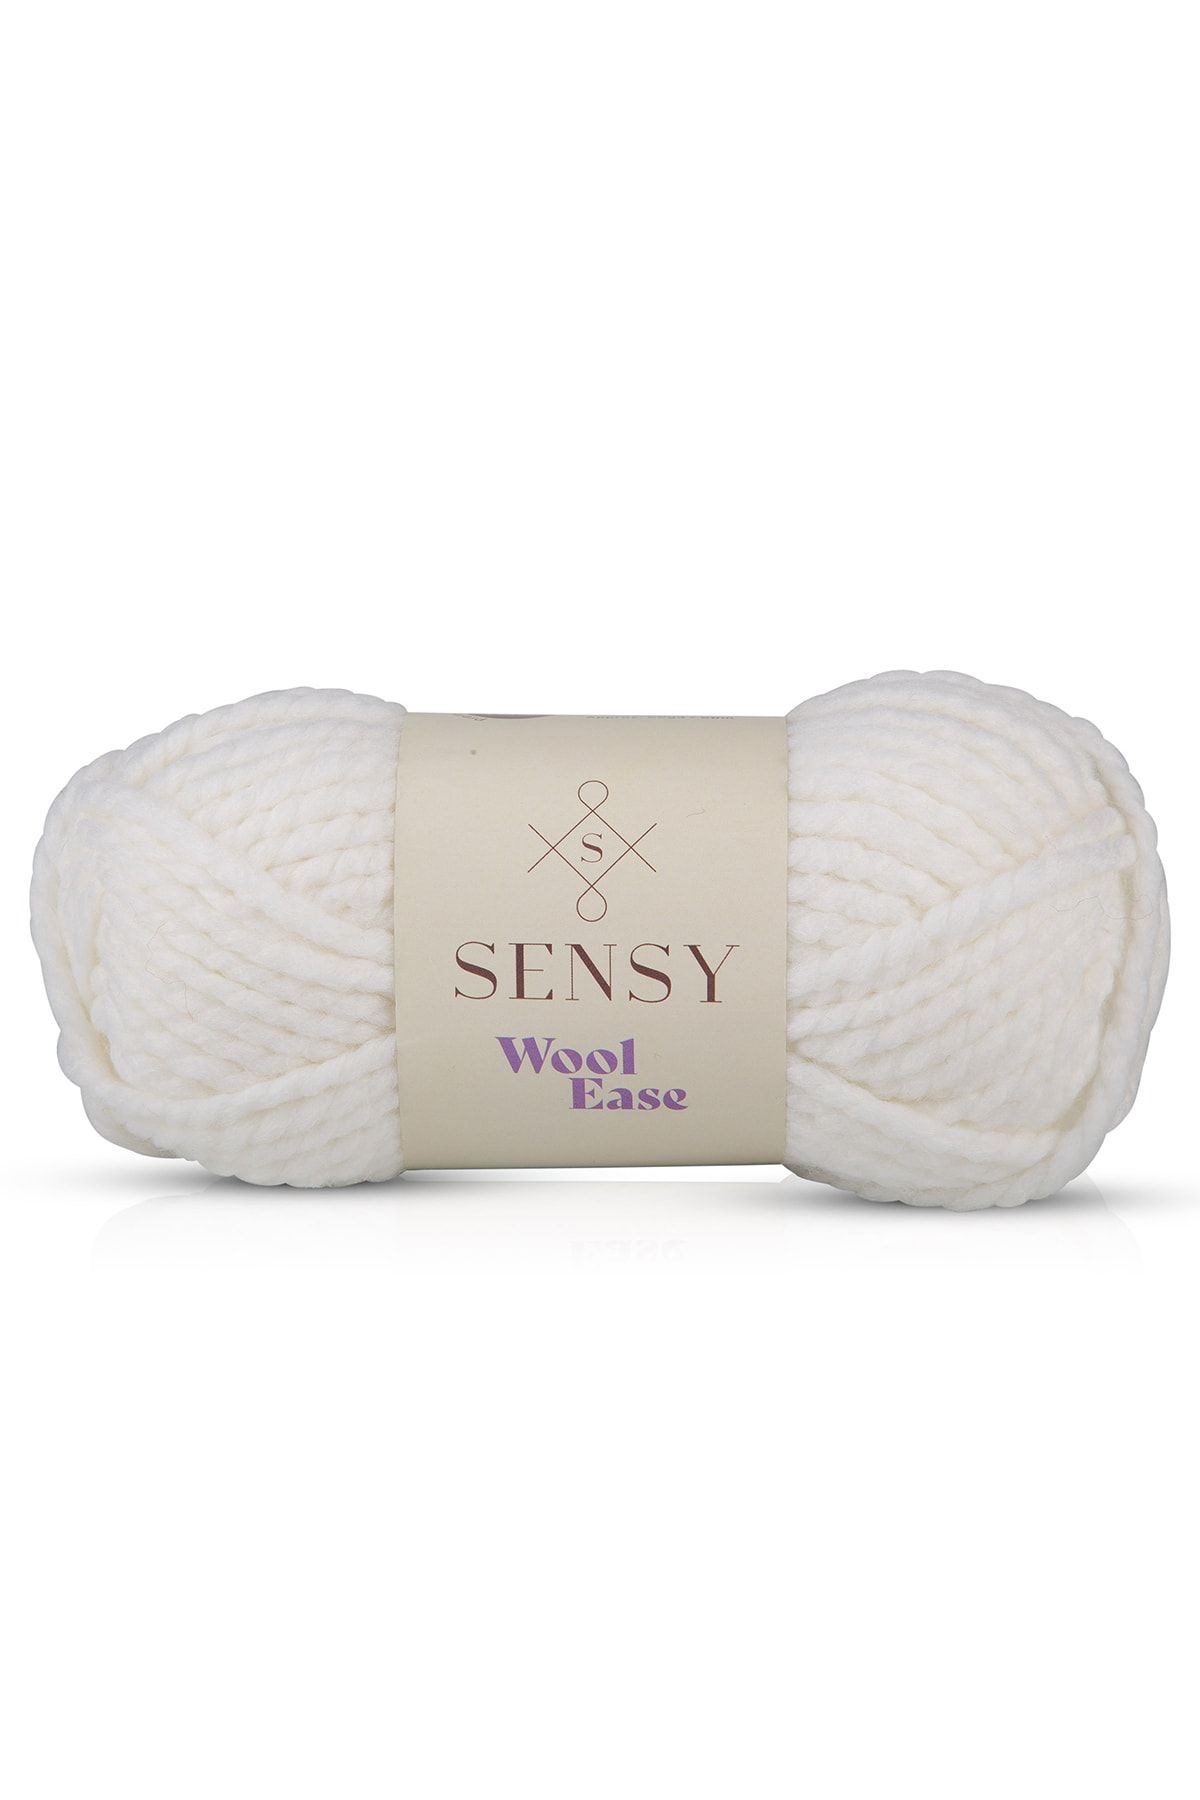 SENSY Premium Wool Ease El Örgü Ipi Atkı Bere Şapka Ip Panço Ipi Hırka Ipliği Beyaz